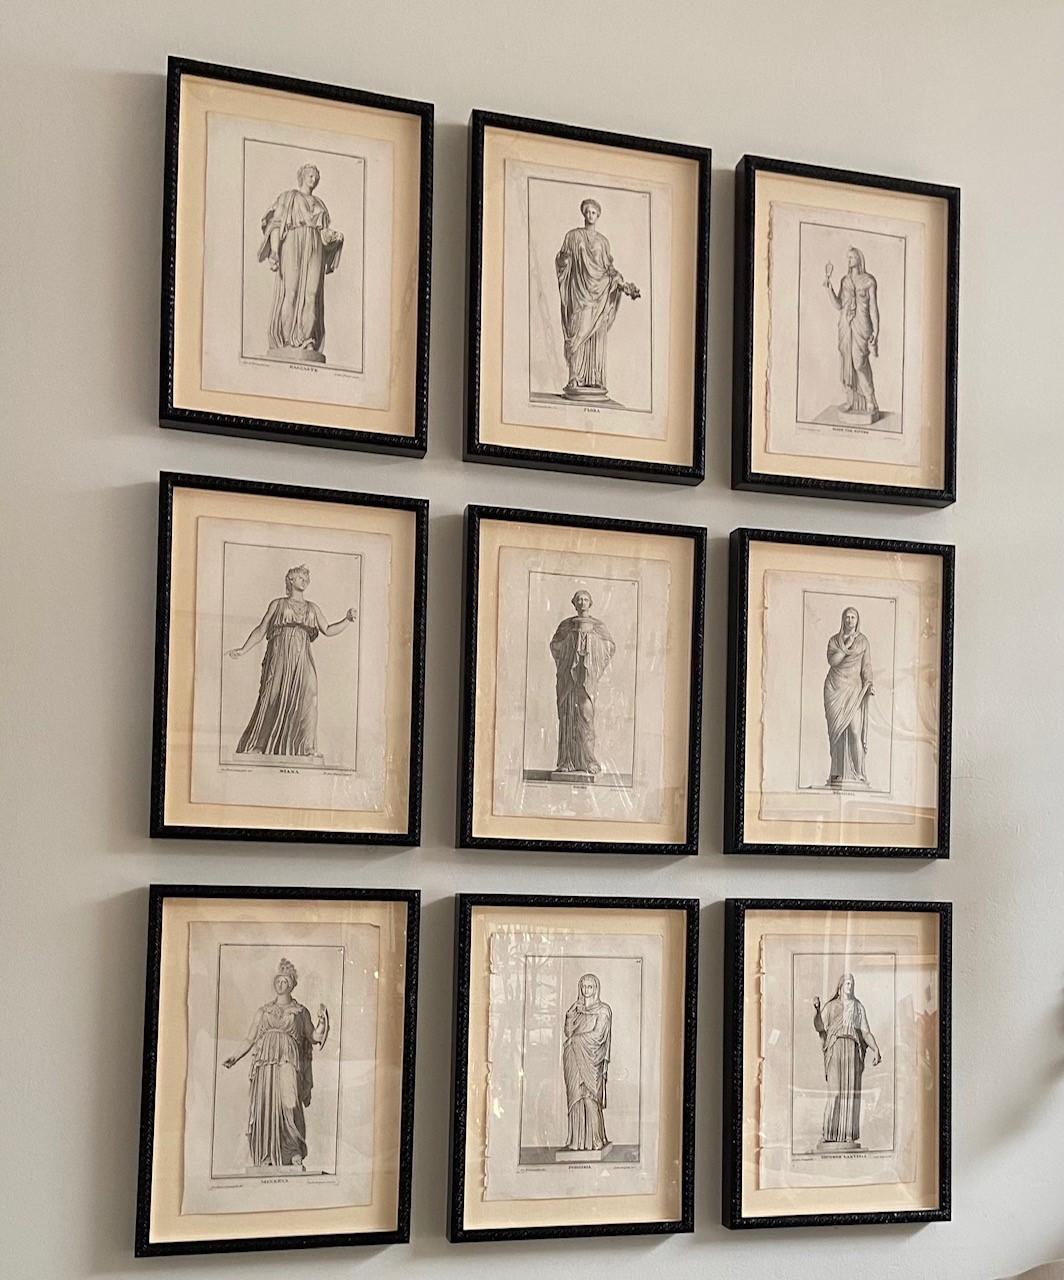 Diese schöne italienische 18. Jahrhundert Schwarz-Weiß-Gravuren auf Büttenpapier Feature das Porträt der weiblichen Statuen, diese Stücke wurde professionell mit allen neuen Materialien gerahmt.
Der Künstler: Giovani Domenico Campiglia, Kupferstich